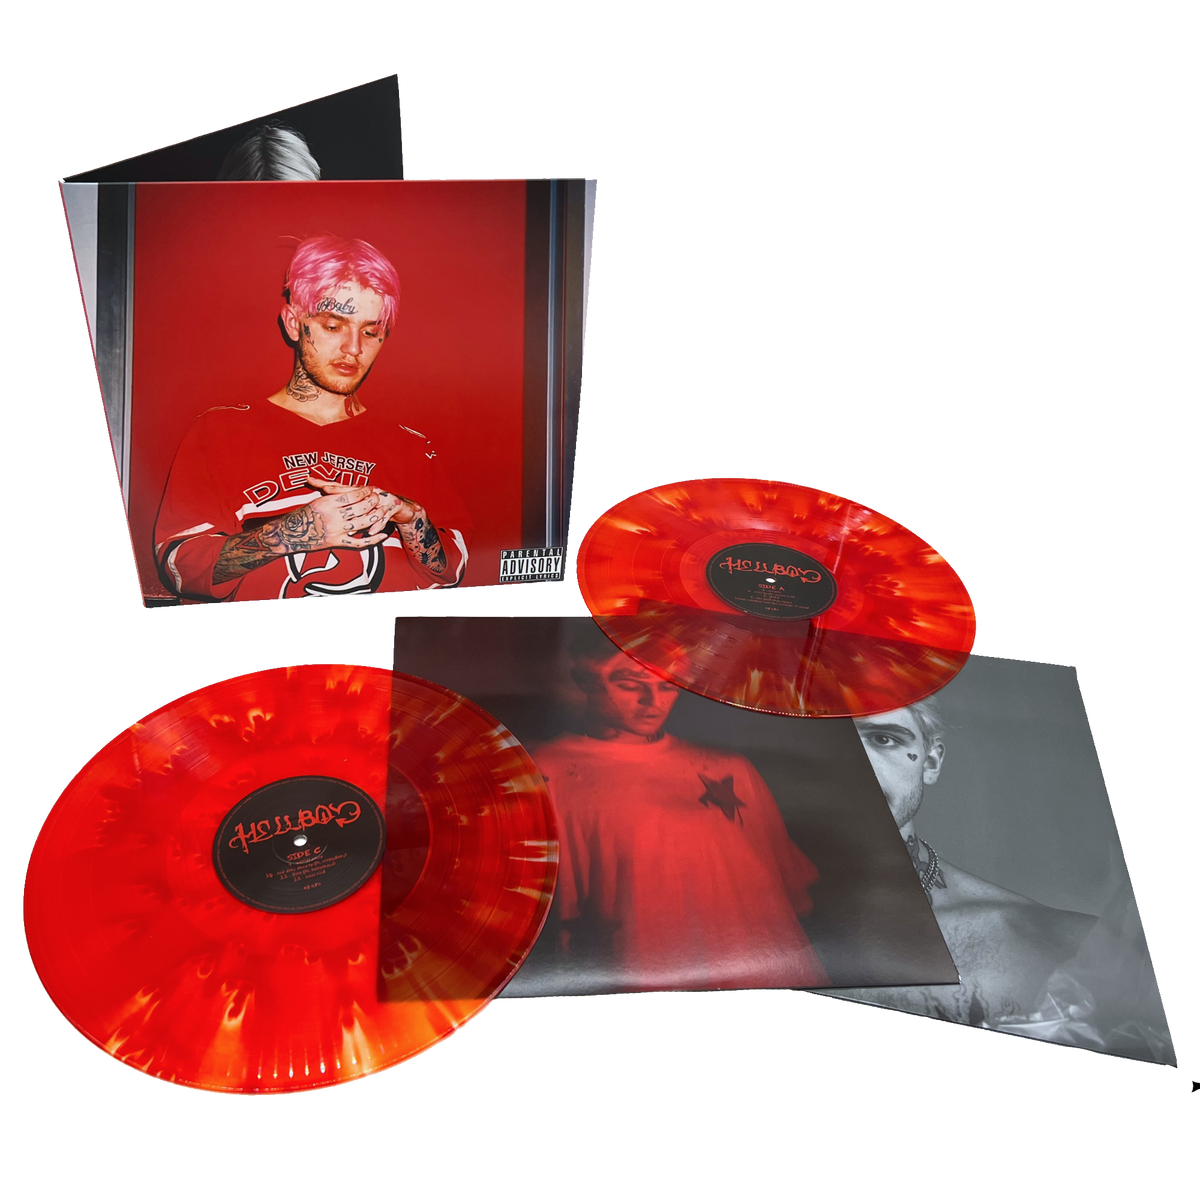 HELLBOY 2LP Red Flames Vinyl